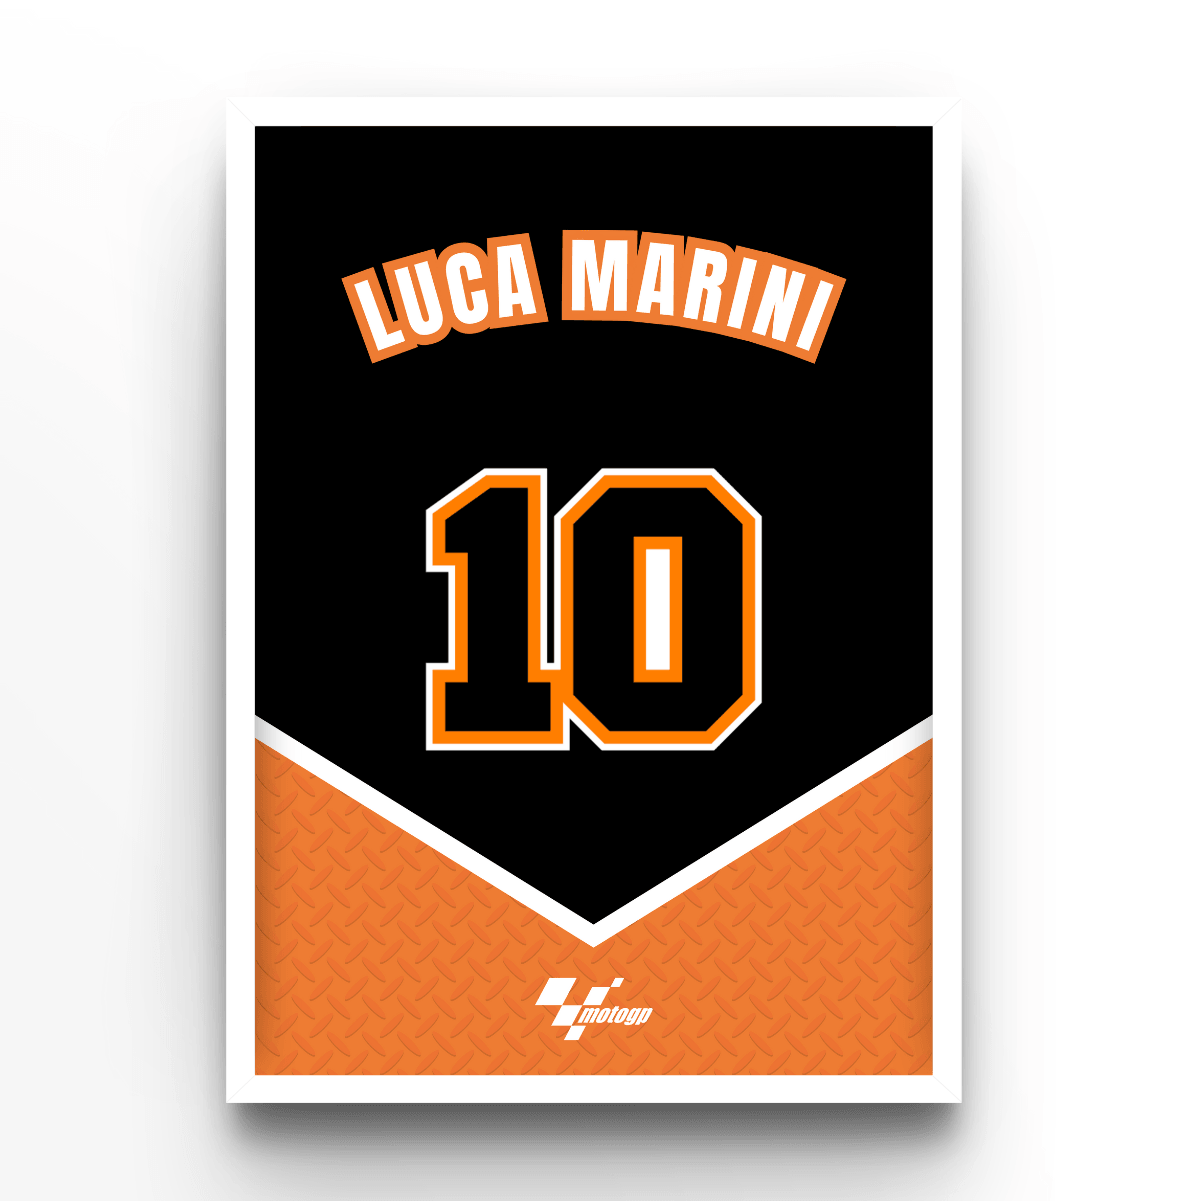 Luca Marini - A4, A3, A2 Posters Base - Poster Print Shop / Art Prints / PostersBase